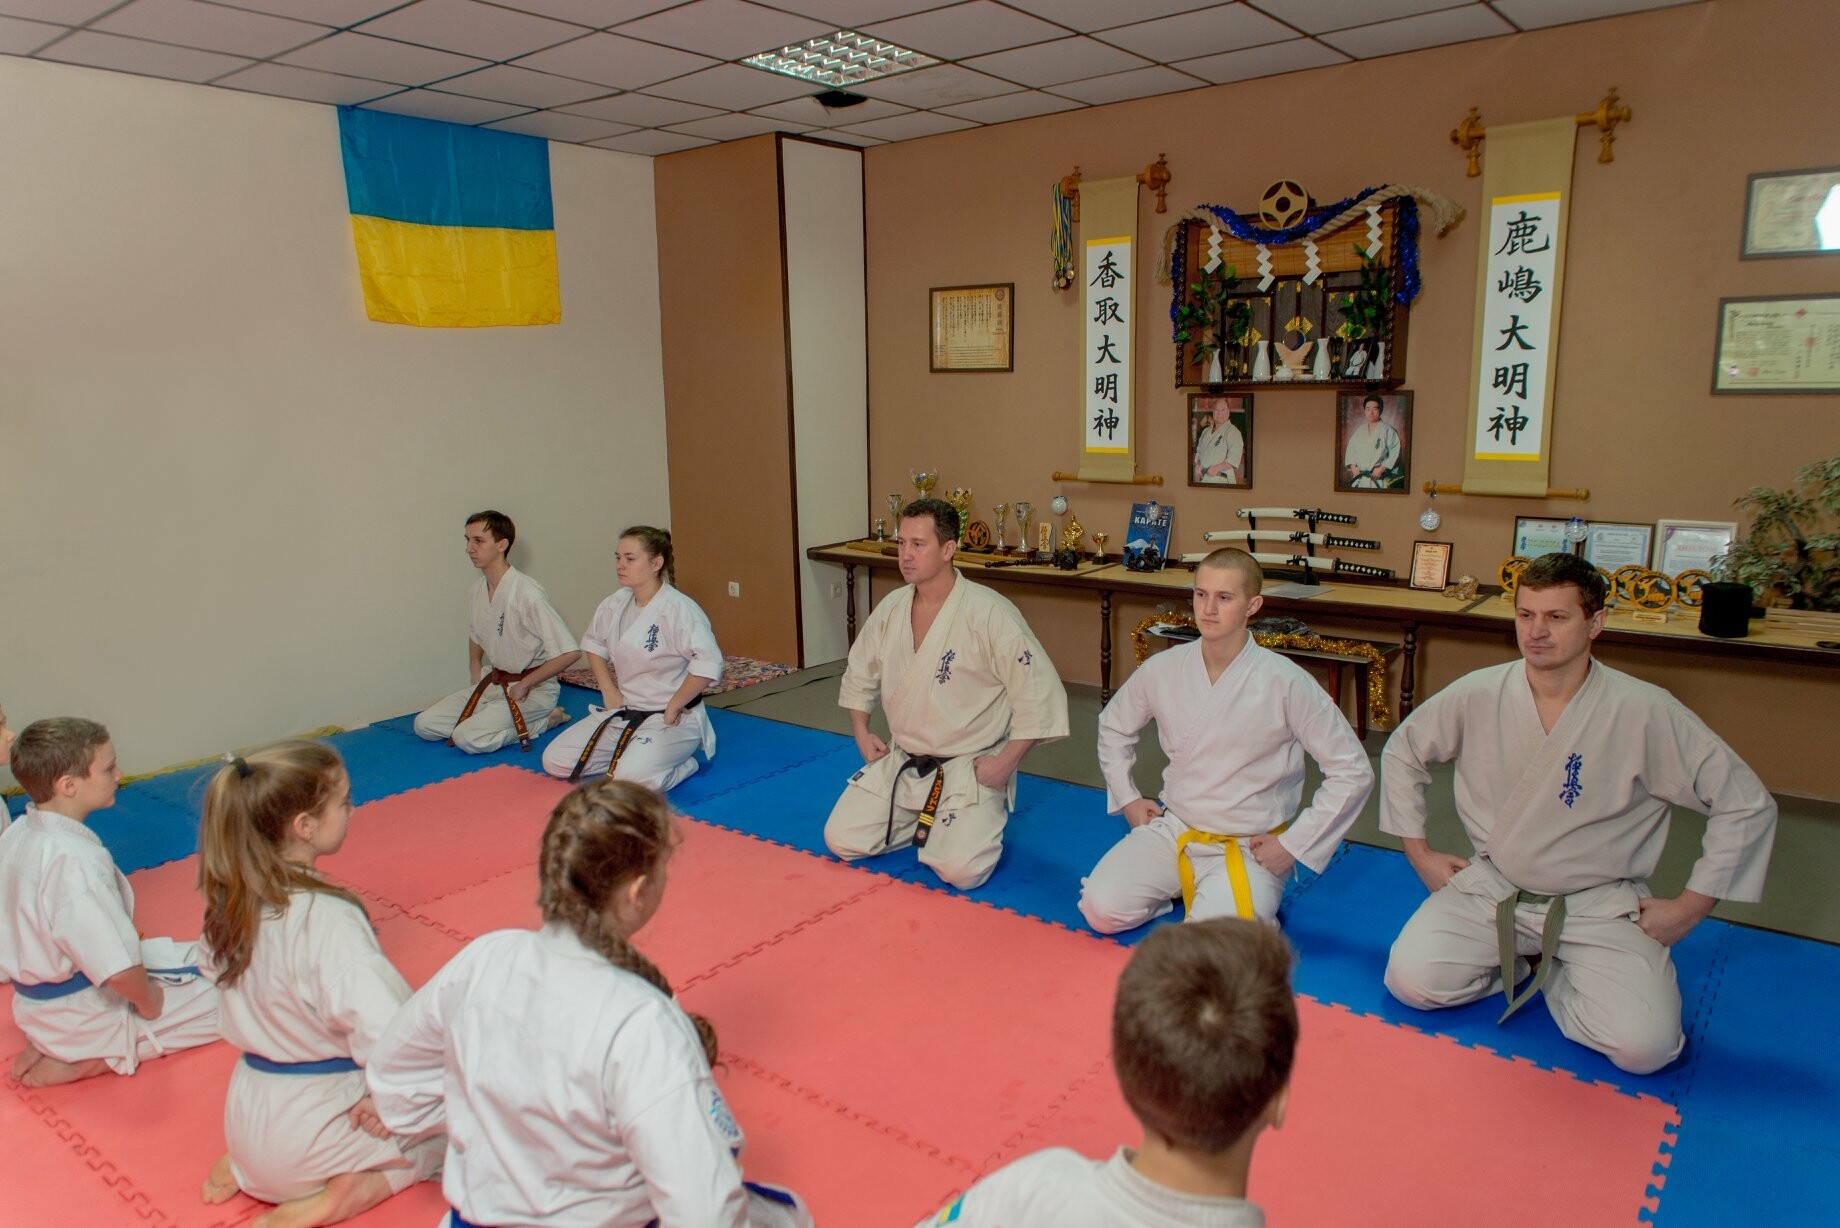 Спортивный Клуб Борисфен проводит круглогодичный набор детей и взрослых для занятий Киокушин каратэ в Запорожье, фото-8